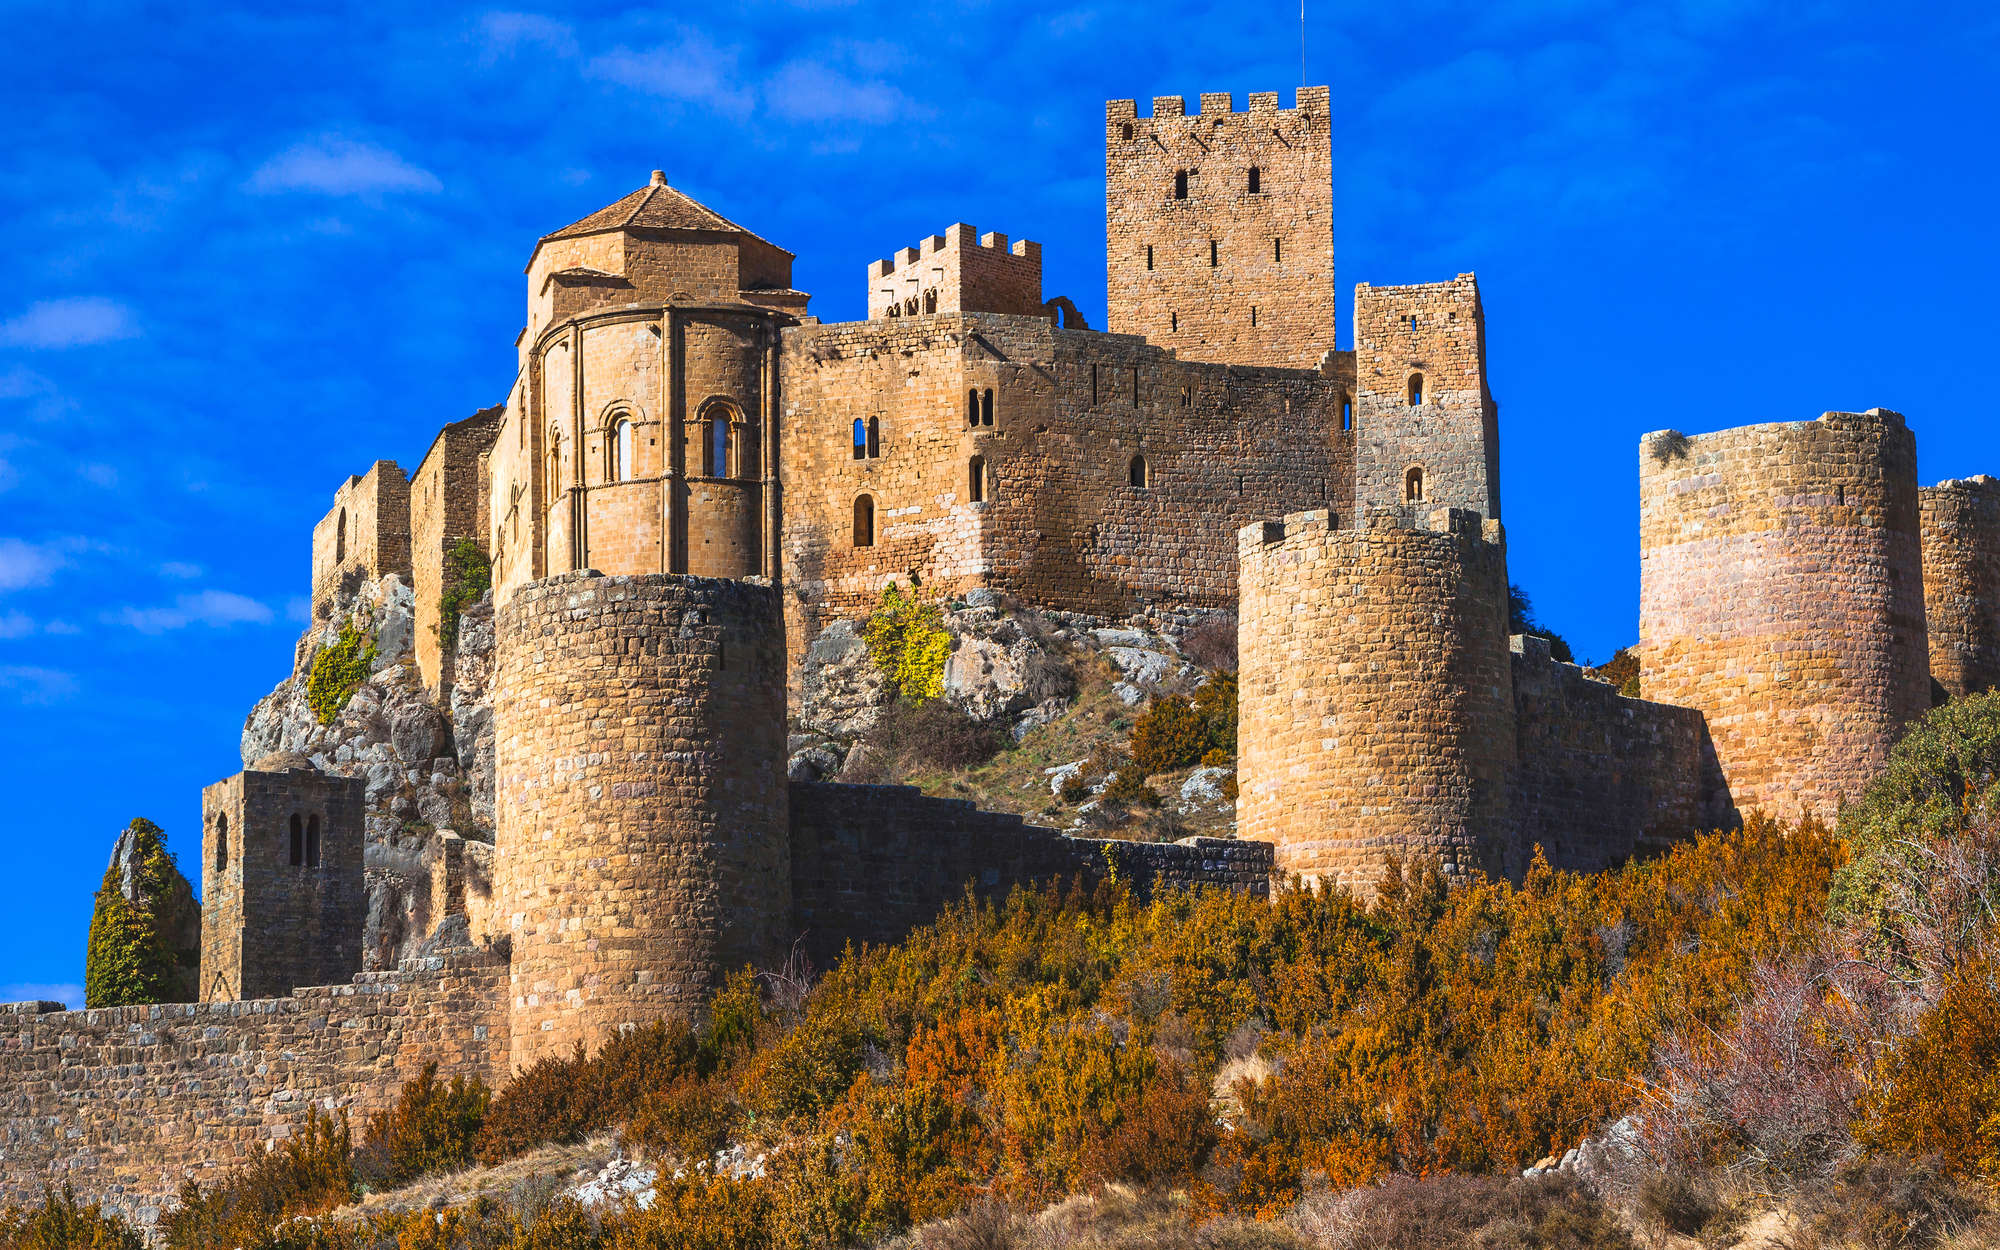             Fotomurali Antico castello con muro di pietra - Vello liscio premium
        